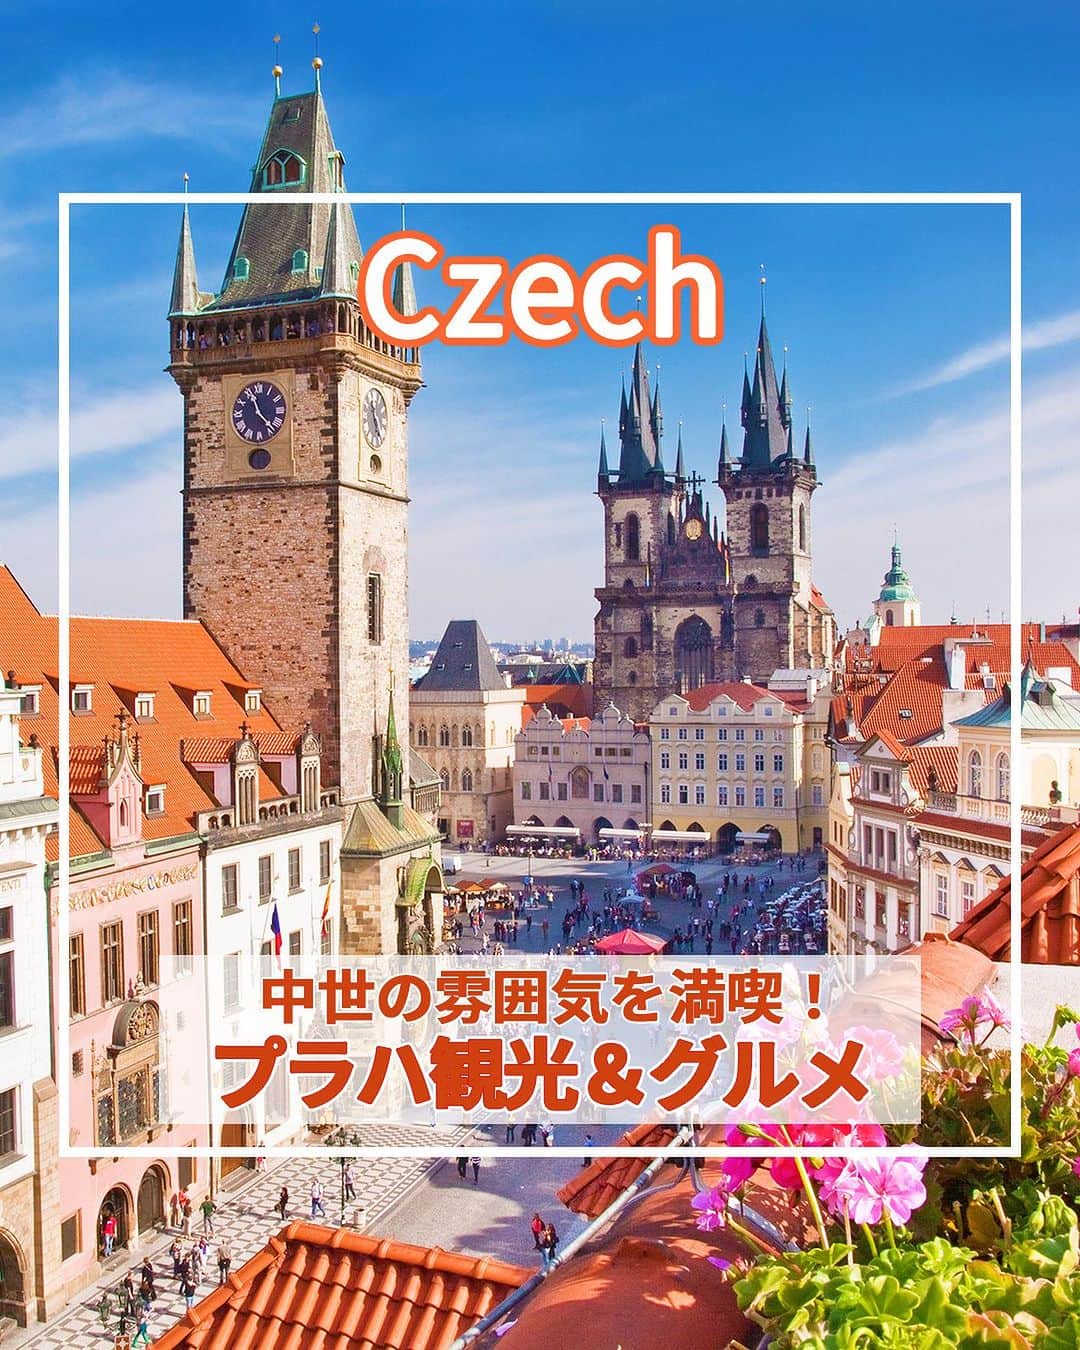 旅工房公式のインスタグラム：「＼華やかな古都を満喫！／  #チェコ #プラハ  ツアー👉 https://www.tabikobo.com/area/europe/czech/   こんにちは！☺  今回はヨーロッパのチェコから、おしゃれな景色が魅力のプラハを特集しました！  美しすぎる絶景スポットから人気グルメまでまとめてあります♪   旅行先の参考にぜひしてみてください＼(^o^)／ 💚   ━━━━━━━━━━━━━━━ ▽  お写真ありがとうございました❣   📍カレル橋  プラハ最古の橋と言われているカレル橋！  かつては王宮と旧市街地を結ぶ橋でしたが、現在ではたくさんの旅行客でにぎわっています。  夜はプラハ城と共にライトアップされロマンチックな雰囲気に♪   📍プラハ城  世界で最も古い城として有名なプラハ城！  宮殿や中庭、美術館、庭園など数々の観光スポットがあります。  敷地内はとても広いので、たっぷり時間をかけて回るがおすすめです◎   📍聖ヴィート大聖堂 aki.yamadaharunatsu さん  プラハ城内にある美しい大聖堂。  ヨーロッパにある大聖堂の中でも特に美しいことで有名です。  見どころは左右の壁にあるミュシャが手掛けたステンドグラス！  絵画のような美しさに思わず目を奪われます。   📍ミュシャ美術館 @mhr__022 さん  チェコを代表する有名画家「アルフォンス・ミュシャ」の生涯と作品を紹介する世界唯一の美術館！  ミュージアムショップでは作品をモチーフにしたポストカードなどお土産にぴったりなグッズも売っています◎   📍Kantýna @miffymiffy9 さん  チェコには海がないため、お肉を使った料理が主流！  そんなチェコで絶対外せないお肉屋さんが経営している有名レストラン♪  美味しい生肉が食べられるのが魅力で、イチ押しは牛のタルタルです◎   📍Good Food, Coffee and Bakery（@goodfoodoriginal）@yurie0727 さん  チェコの国民的スイーツ、トゥルデルニークが食べられるお店！  サクッとした筒状のパンにアイスなどをトッピングしたもので、日本人からも大人気♪トッピングは種類豊富で何を選ぶか迷うほど♪   ※営業時間・内容は変更になる場合がございます。詳しくは各ホームページをご確認ください。   海外・国内問わず、素敵なスポットやグルメ、アイテムの写真にはぜひ #旅工房 や @tabikobo をタグ付けして下さい💕   ━━━━━━━━━━━━━━━   ✨   #旅工房 #チェコ女子旅 #チェコ旅行 #プラハ旅行 #チェコグルメ #チェコスイーツ #チェコカフェ #プラハグルメ #カレル橋 #プラハ城 #ミュシャ美術館 #ミュシャミュージアム #カンティーナ  #Kantýna #トゥルデルニーク #ヨーロッパ #ヨーロッパ旅行 #チェコ土産 #旅行好きな人と繋がりたい #海外旅行準備 #旅好き女子 #妄想旅行 #海外旅行行きたい #海外旅行計画 #旅スタグラム #海外一人旅 #旅の記録」